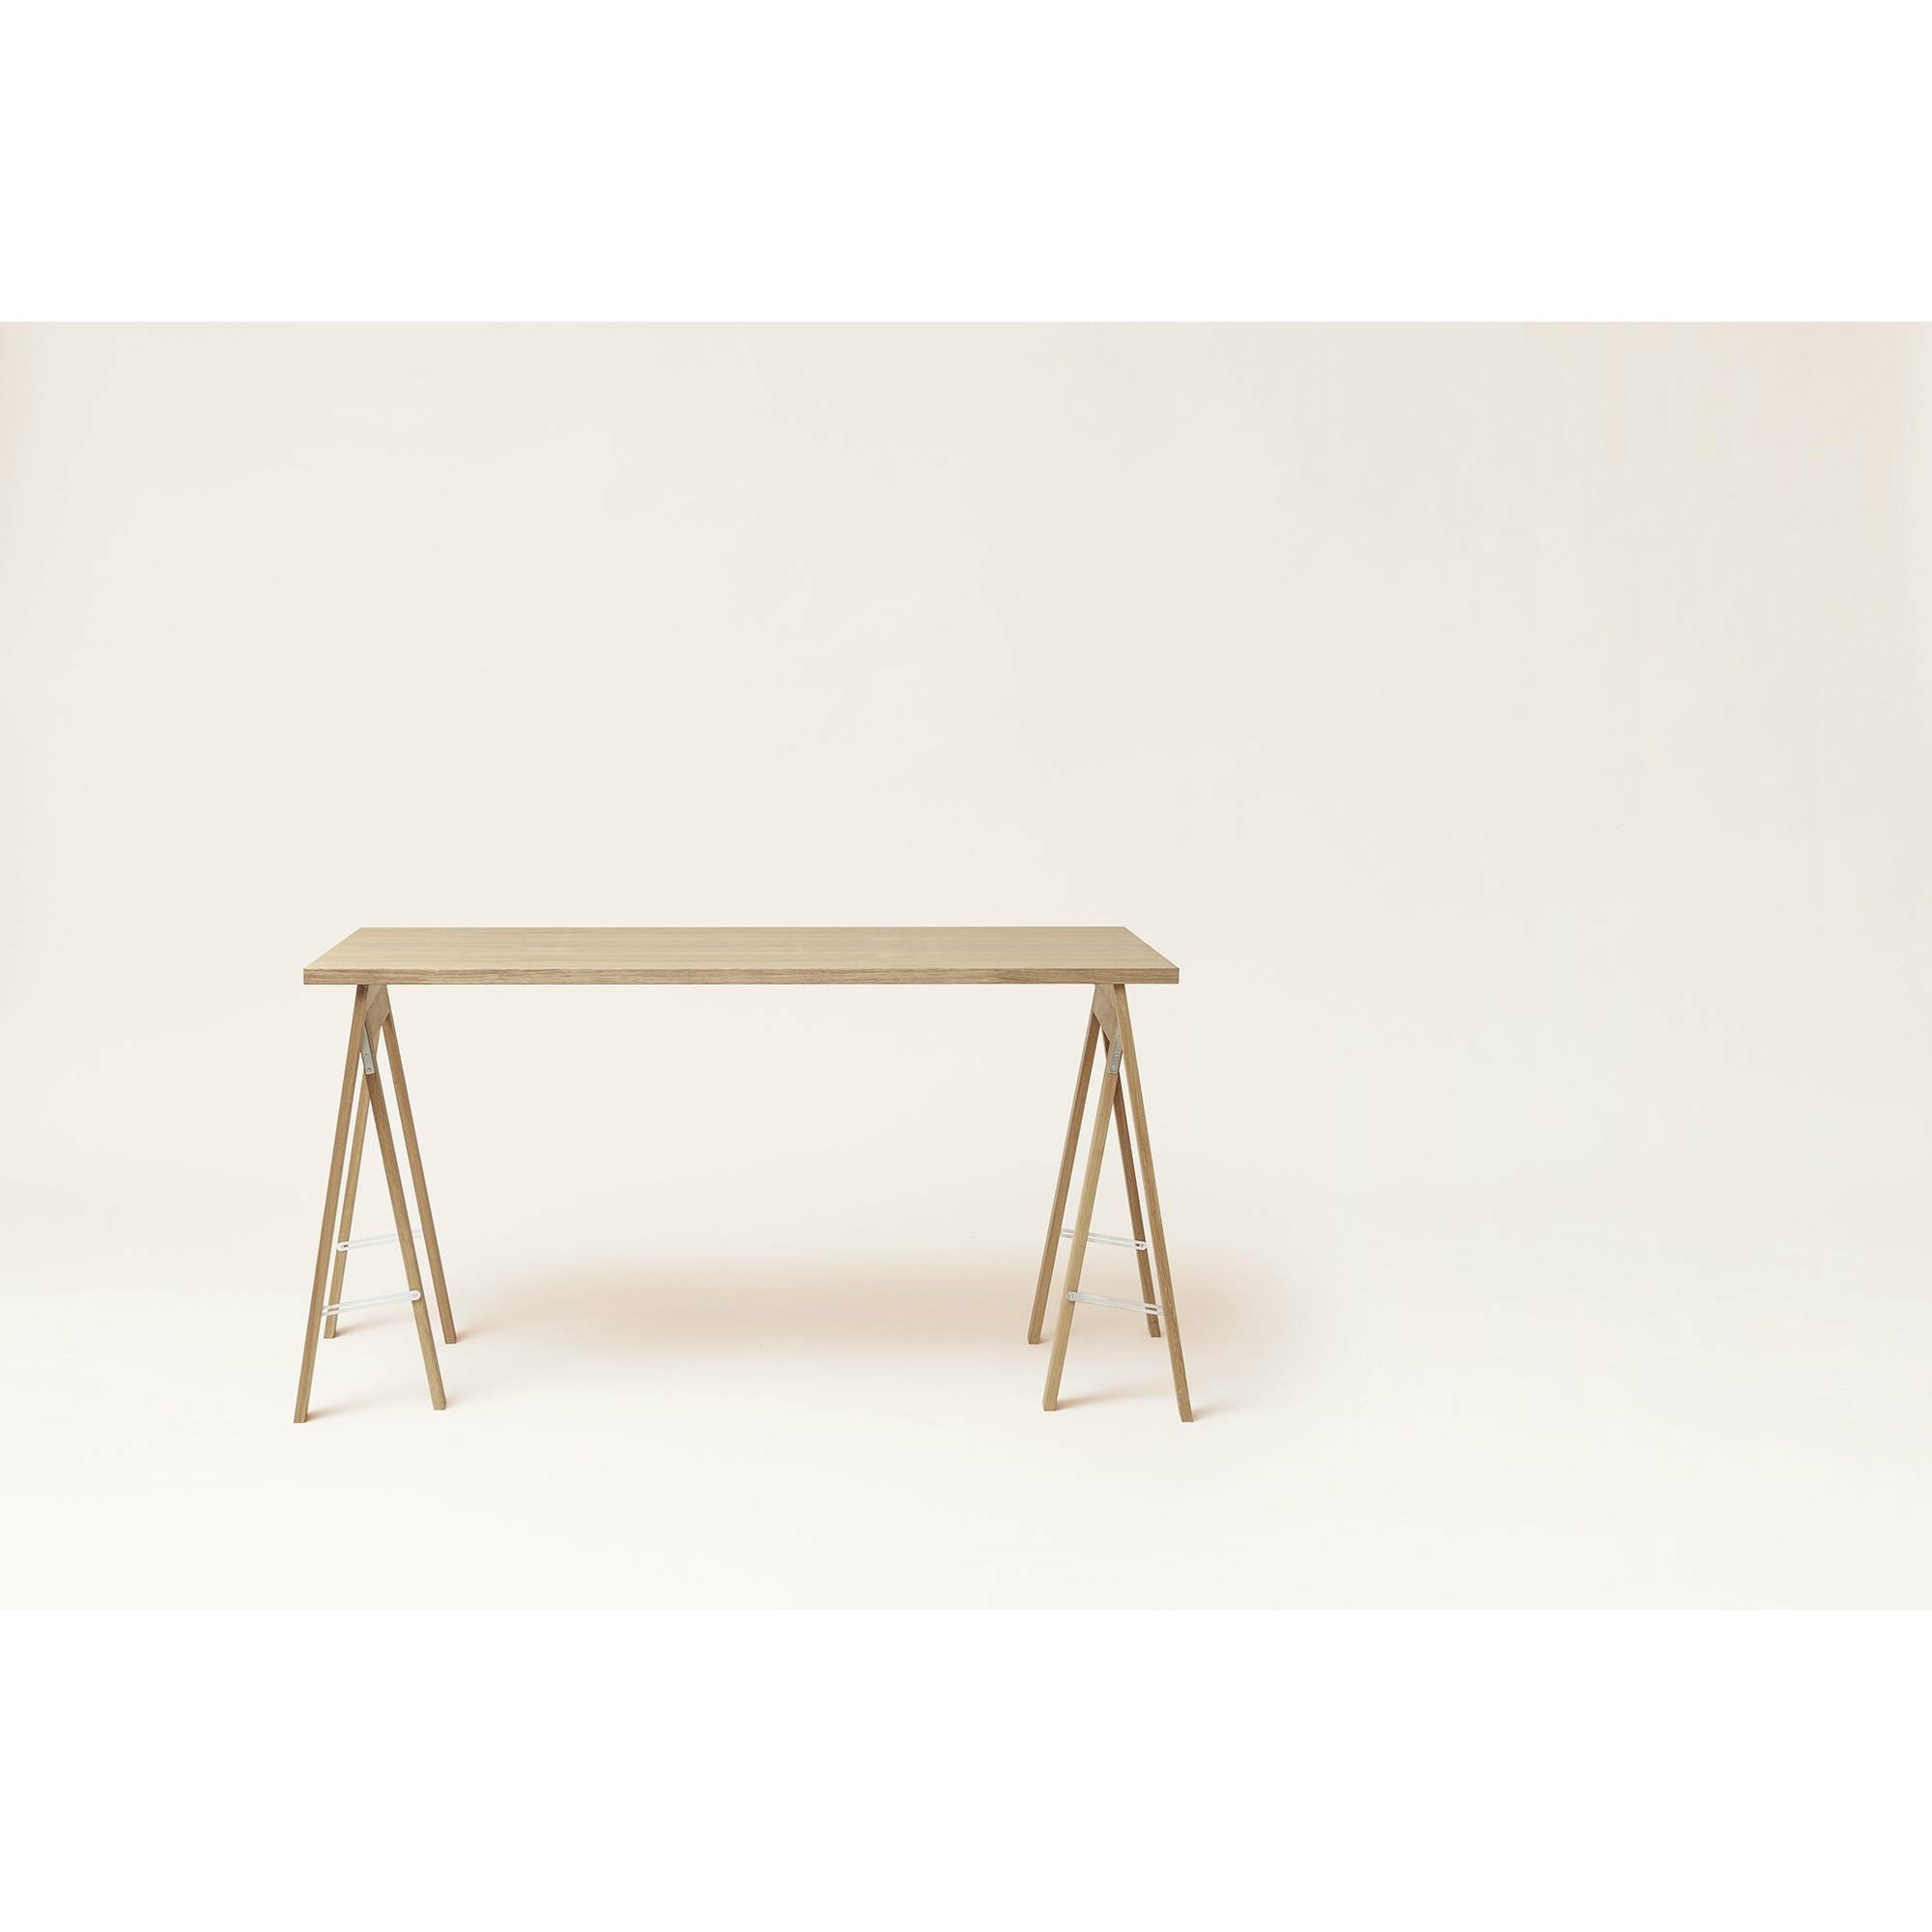 Form e perfezionamento del tavolo lineare 125x68 cm. Quercia oliata bianca